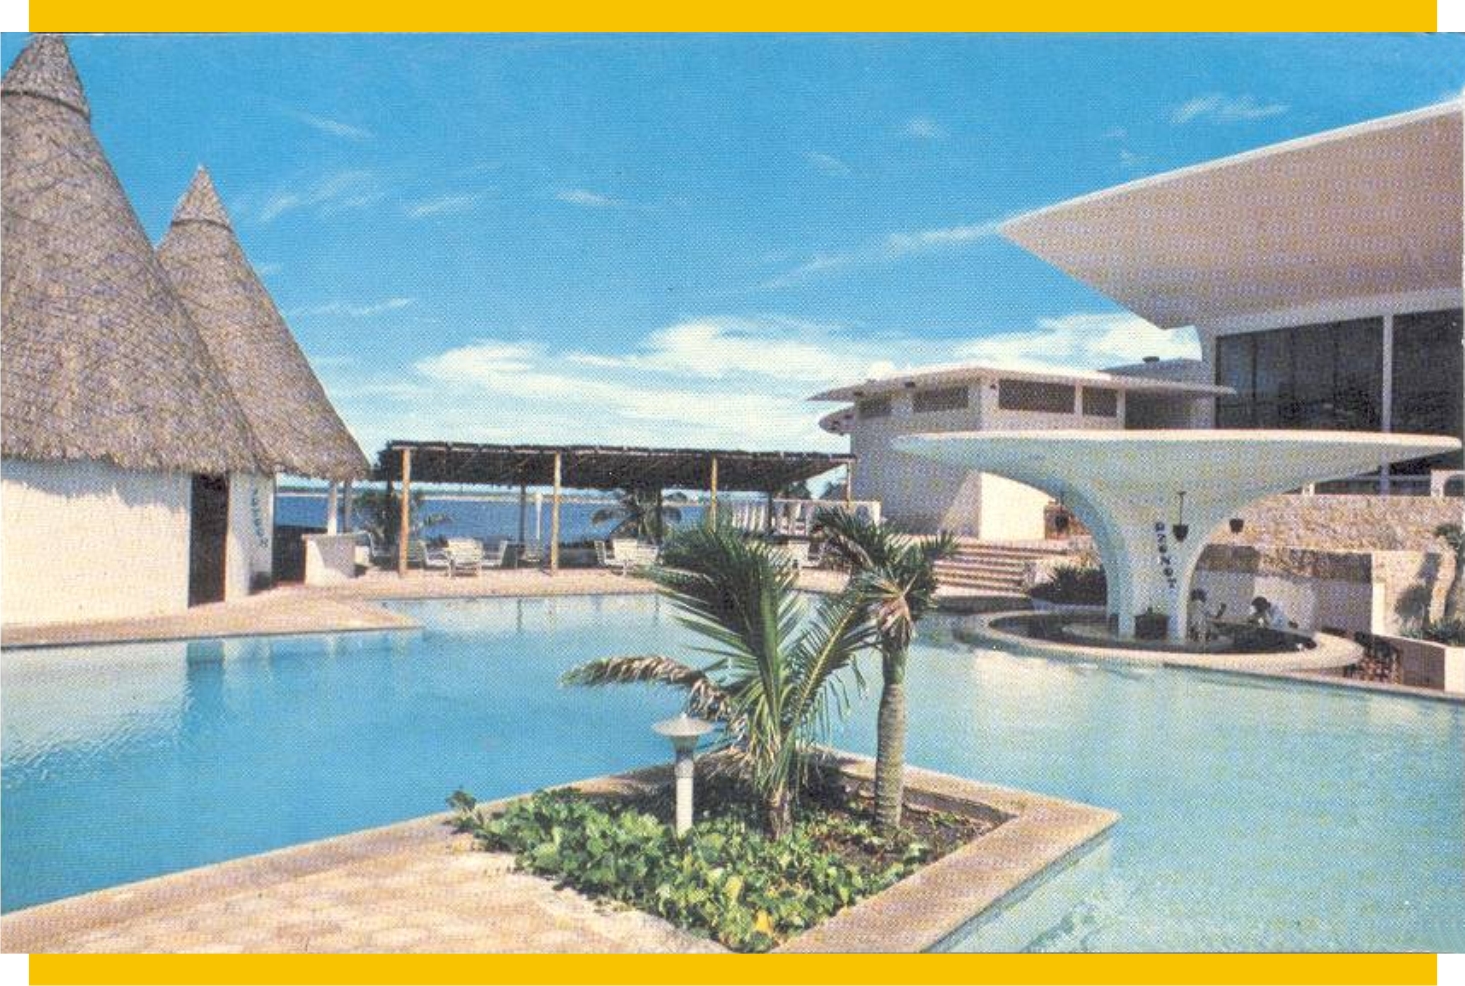 Alberca del hotel Garza Blanca a fines de los aÃ±os 1970s.